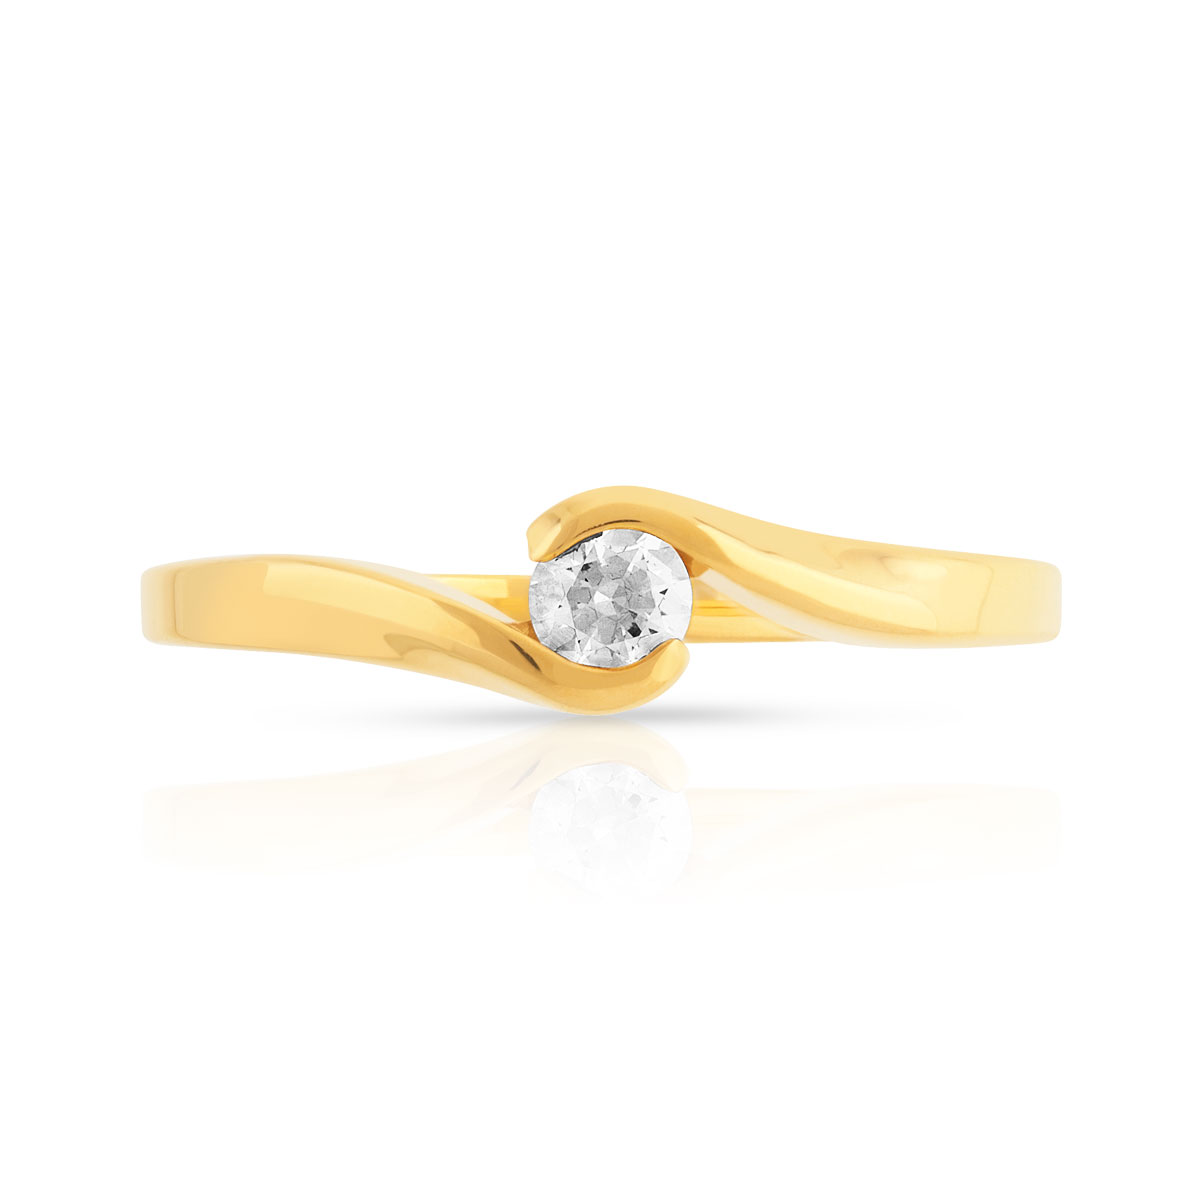 Bague solitaire or 750 jaune diamant synthétique 0.15 carat - vue 3